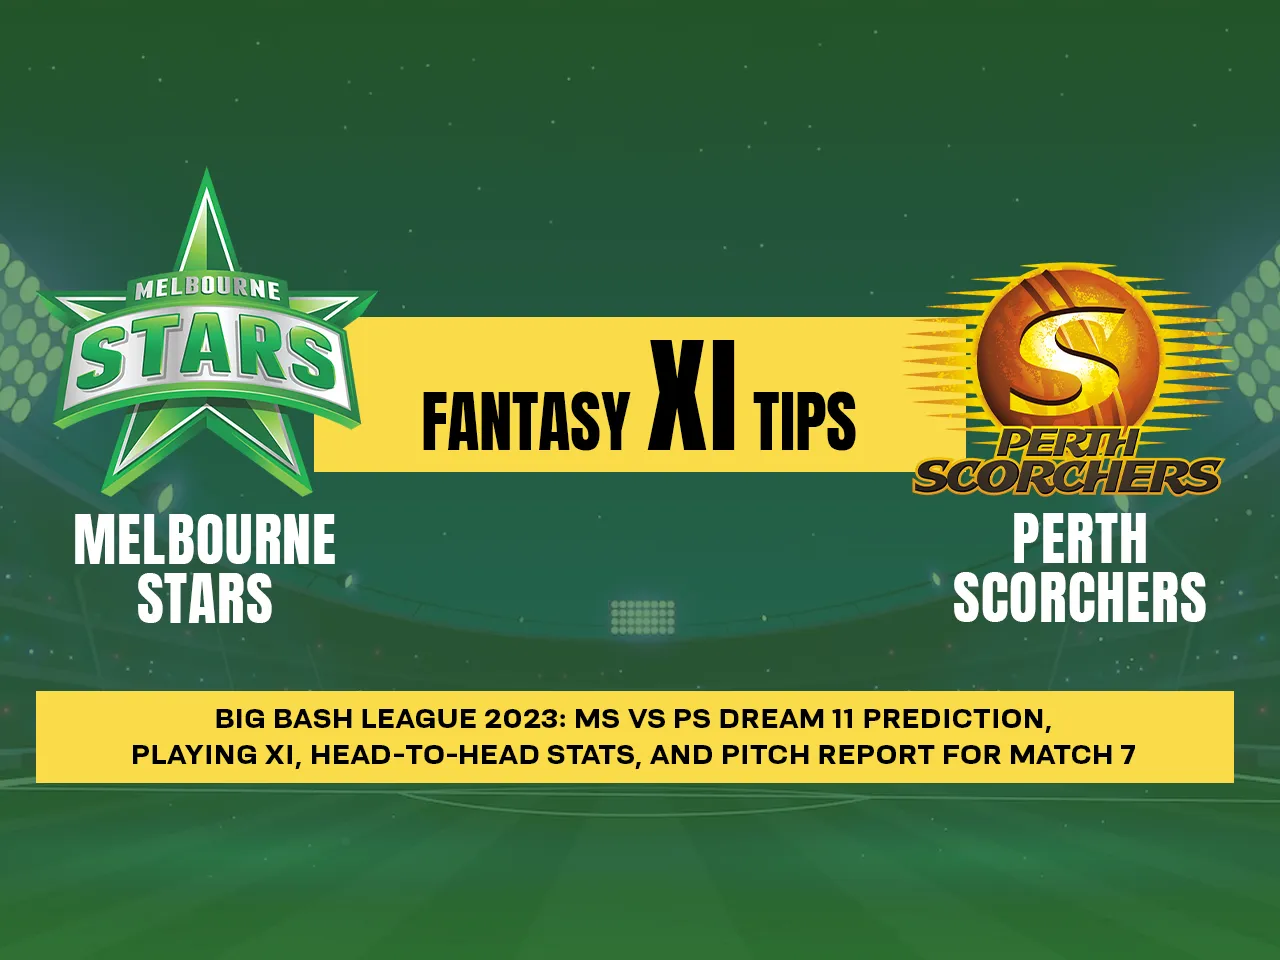 Melbourne Stars vs Perth Scorchers DREAM 11